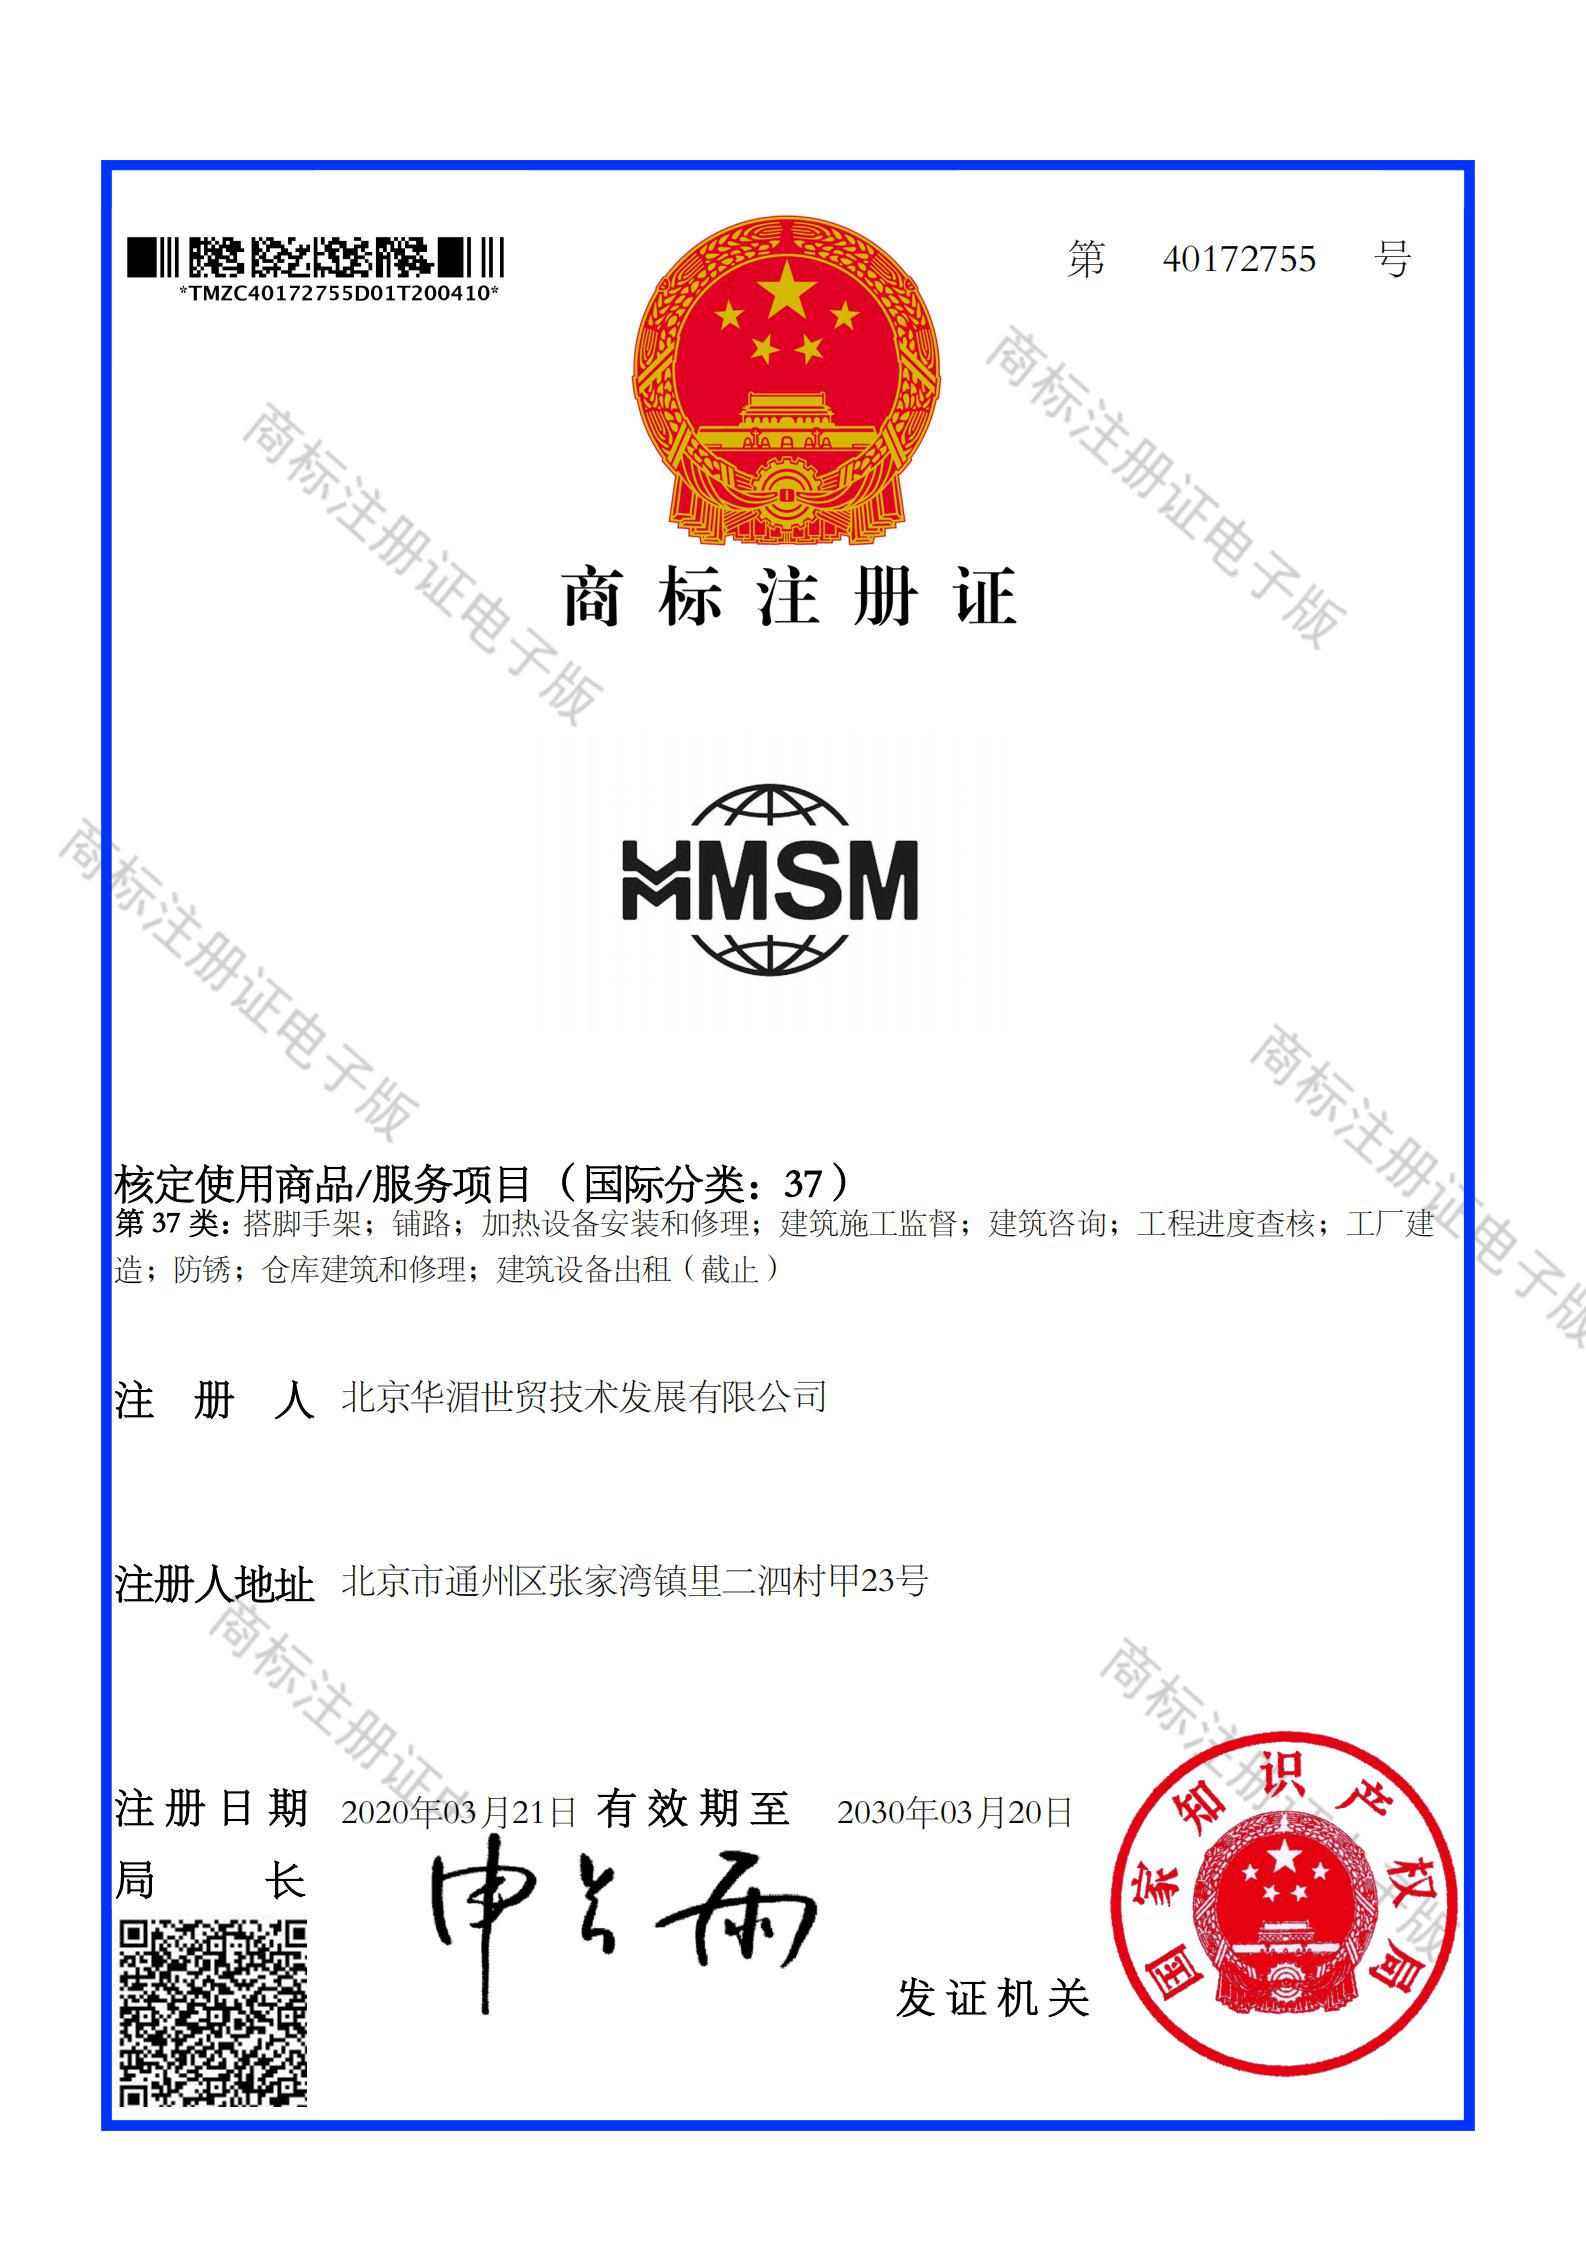 北京华湄世贸技术发展有限公司_40172755_商标注册证_00.jpg